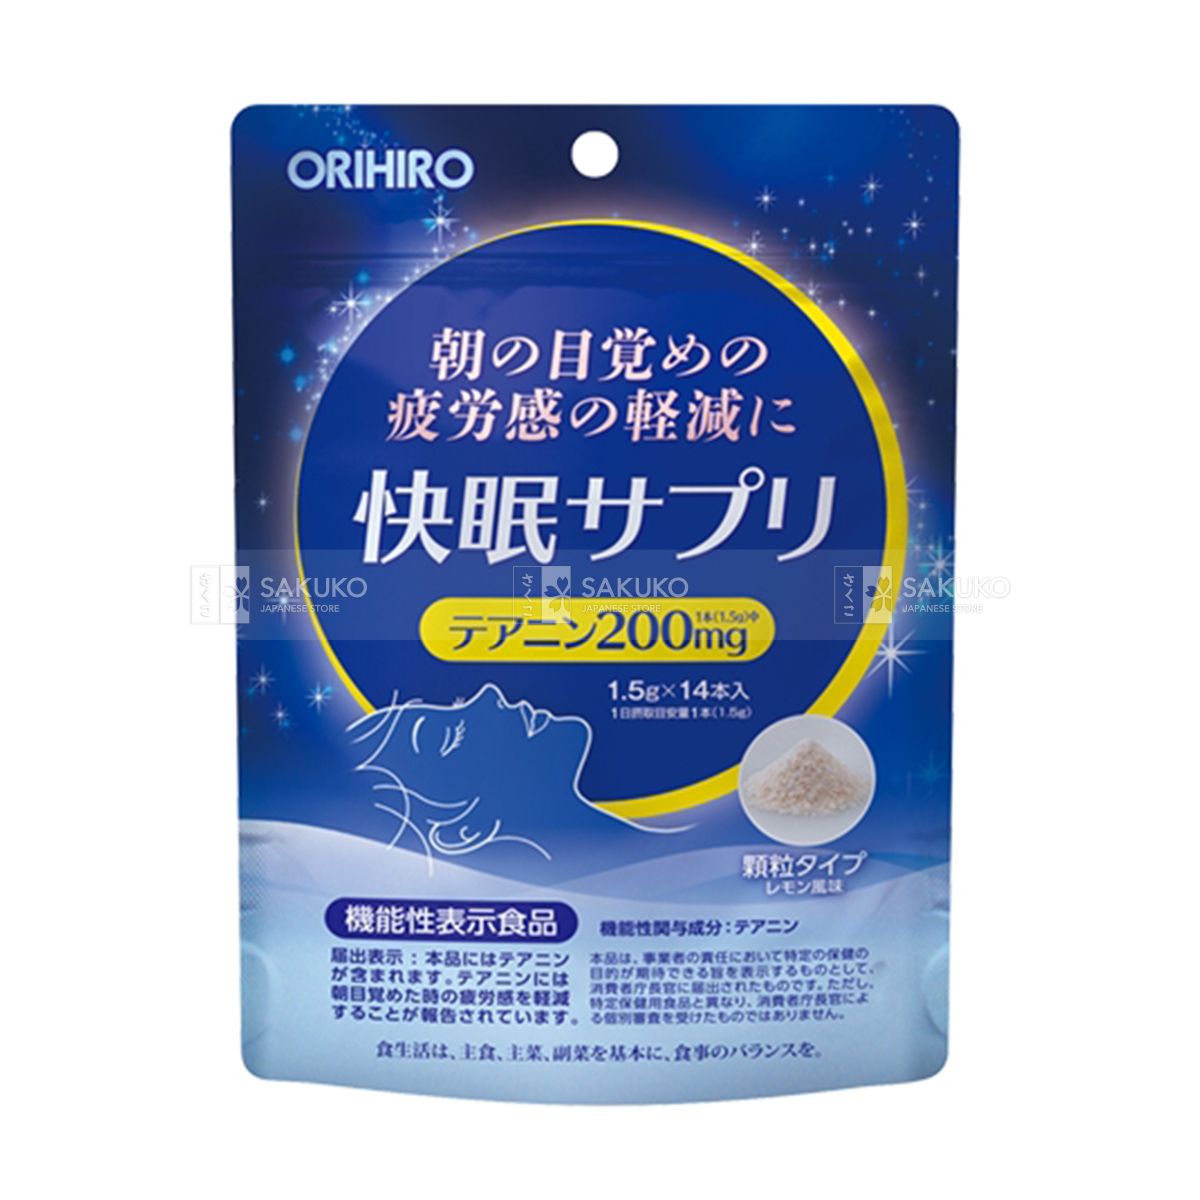  ORIHIRO- Thức uống hỗ trợ ngủ ngon 1.5g x 14 gói 